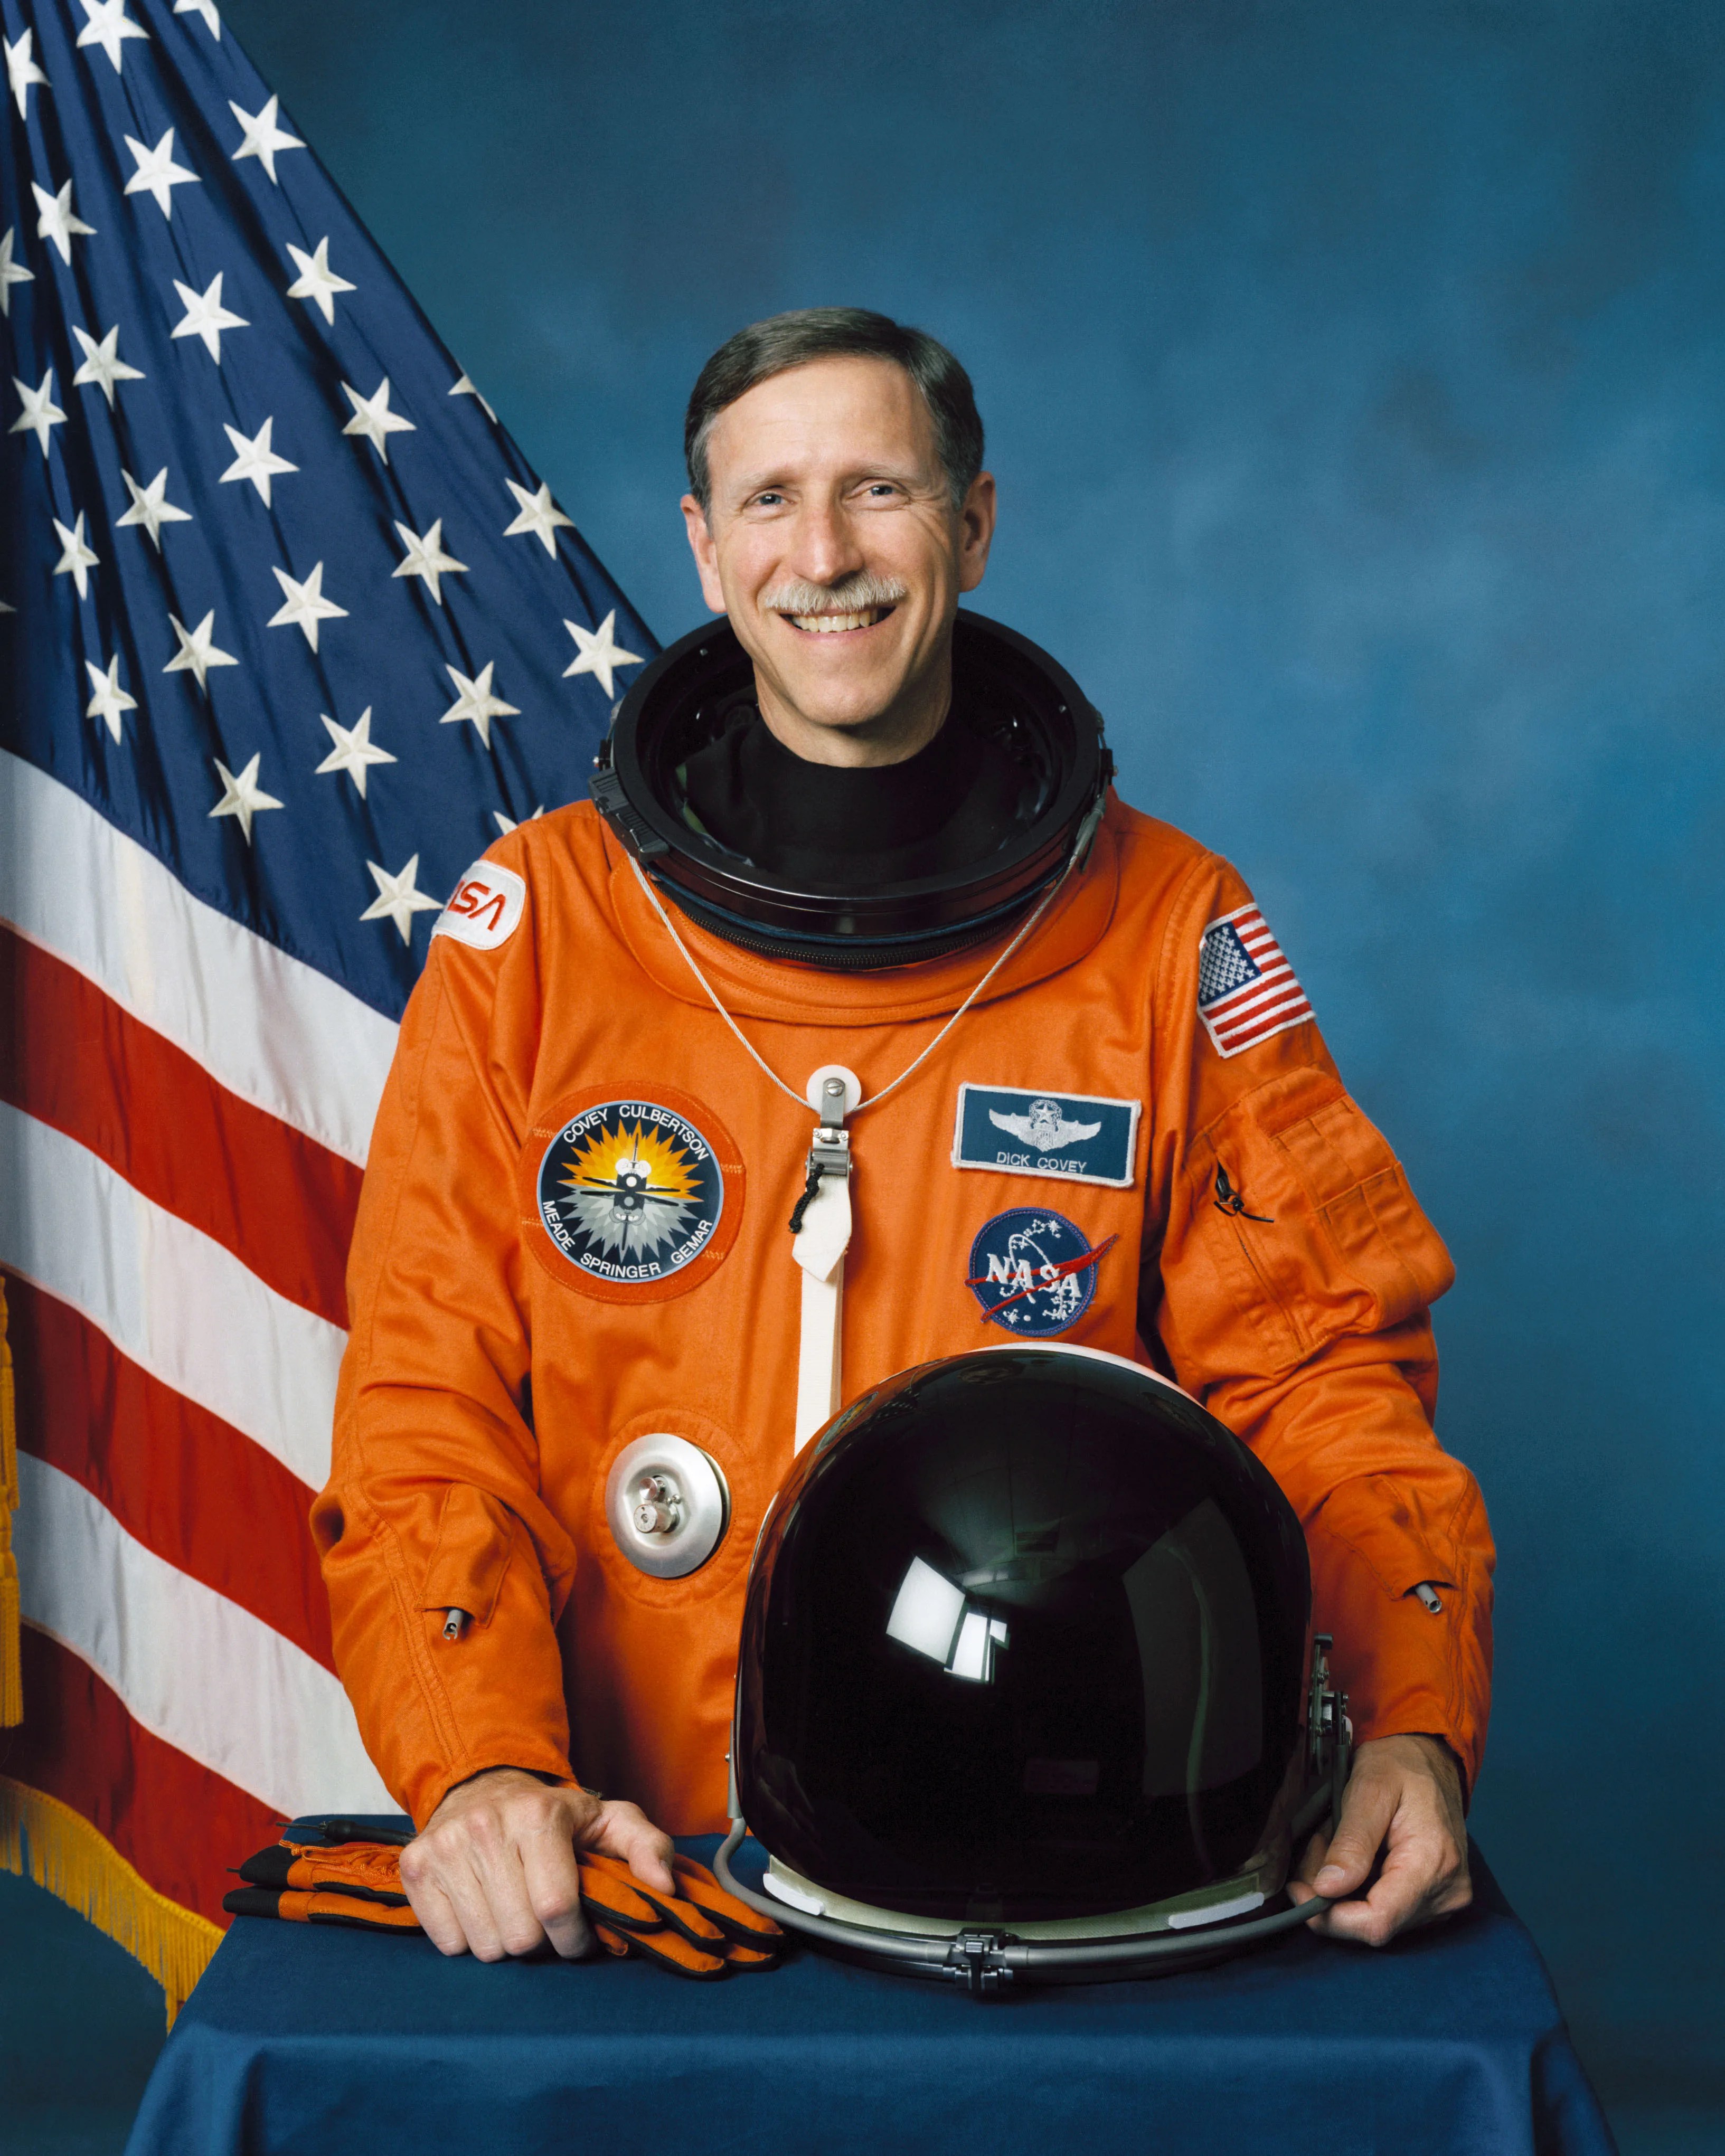 Official astronaut portrait of Richard Covey.